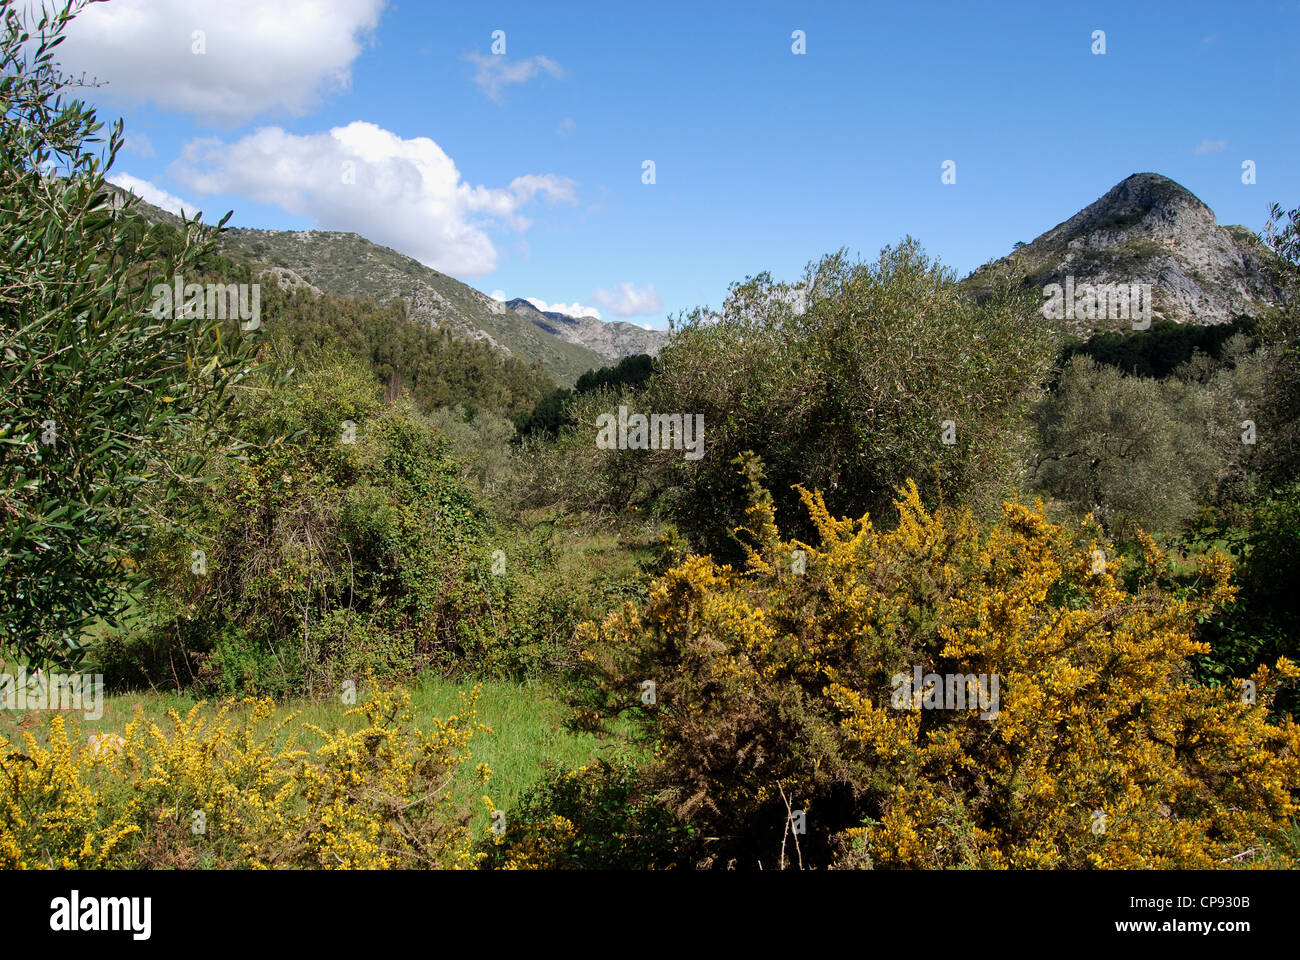 Vista attraverso gli alberi verso le montagne, Refugio de Juanar, vicino a Marbella, provincia di Malaga, Andalusia, Spagna, Europa occidentale Foto Stock